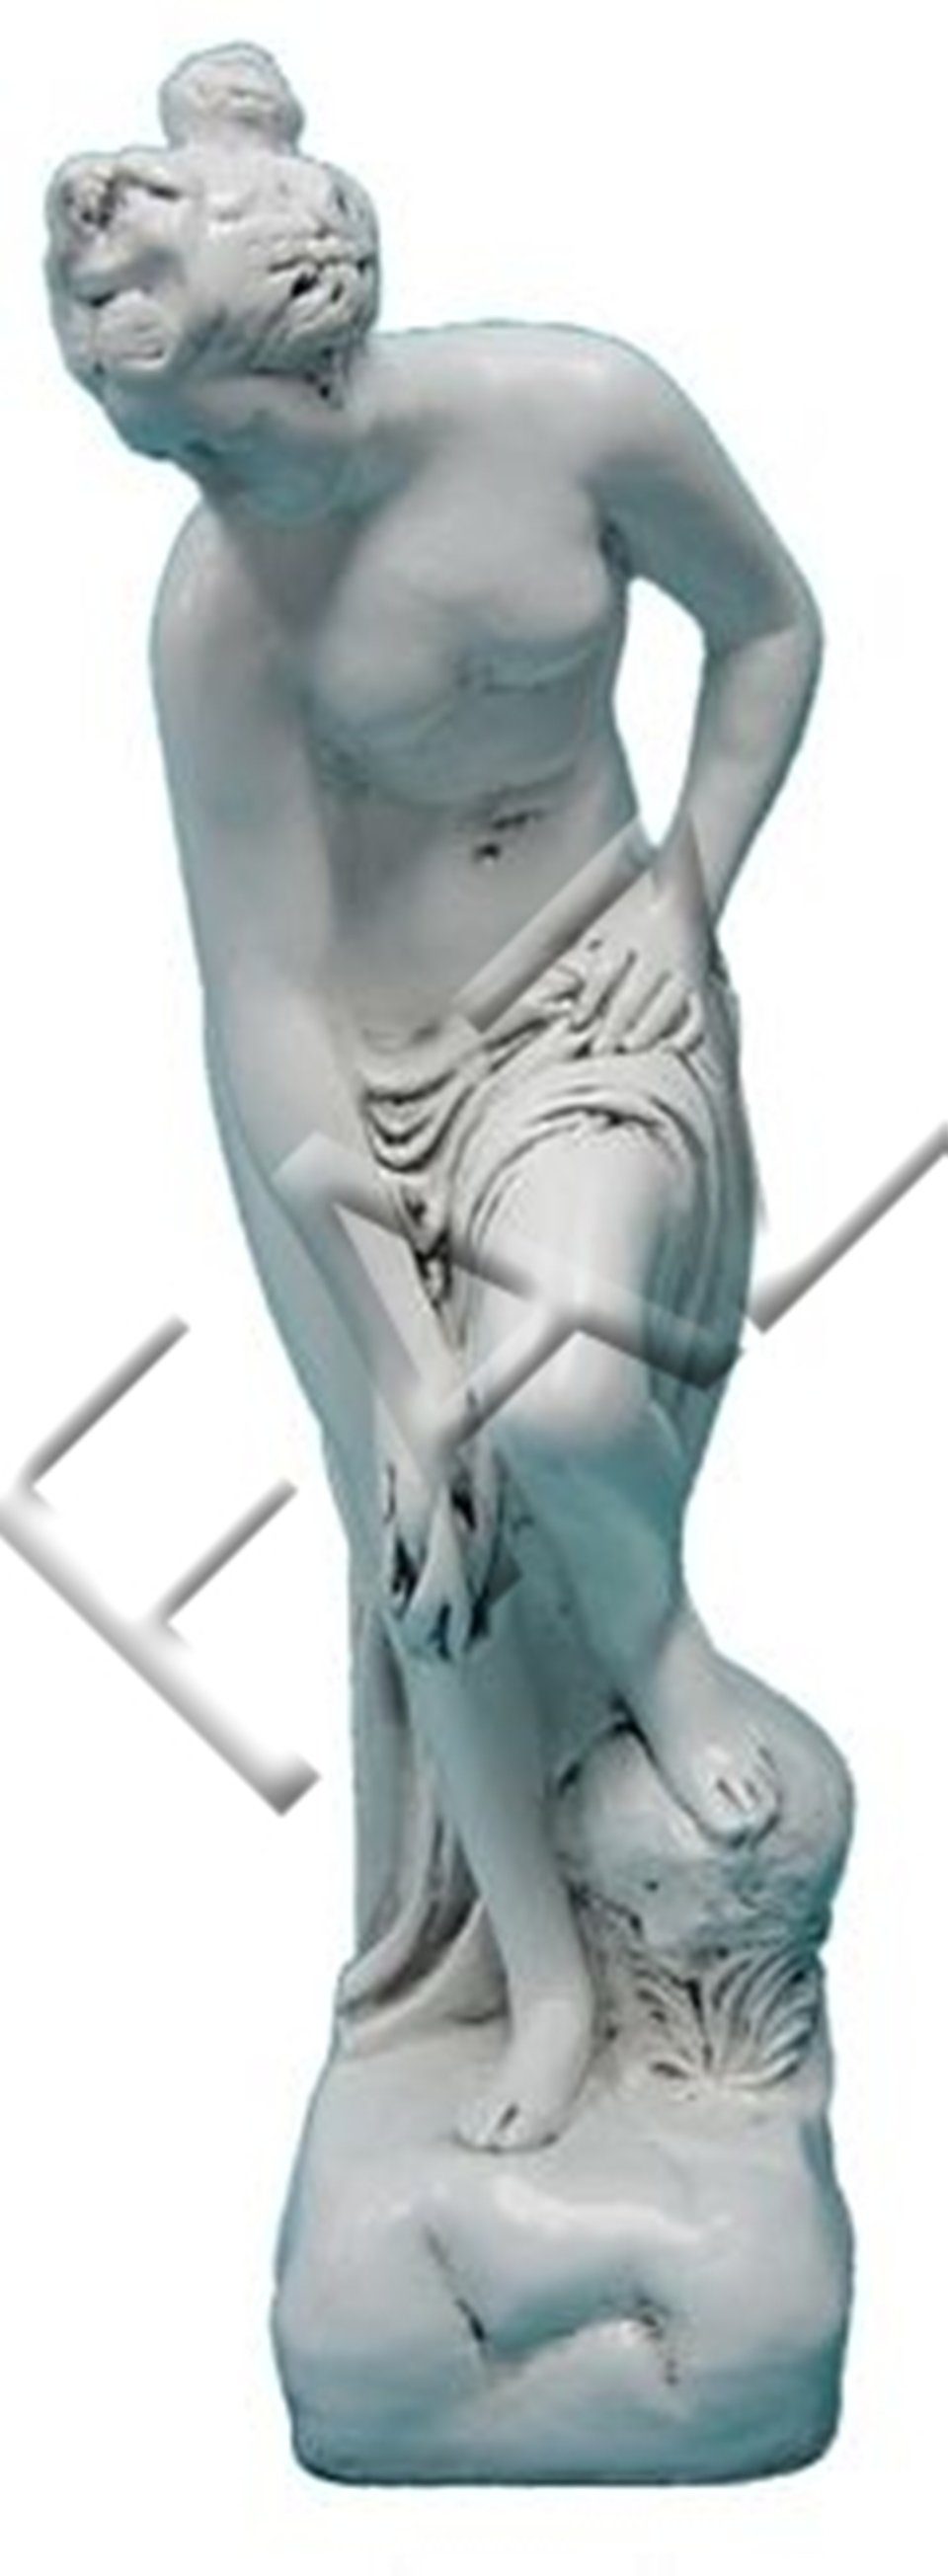 JVmoebel Dekofigur Design Griechische Figur Statue Skulptur Figuren Skulpturen Dekoration Weiß